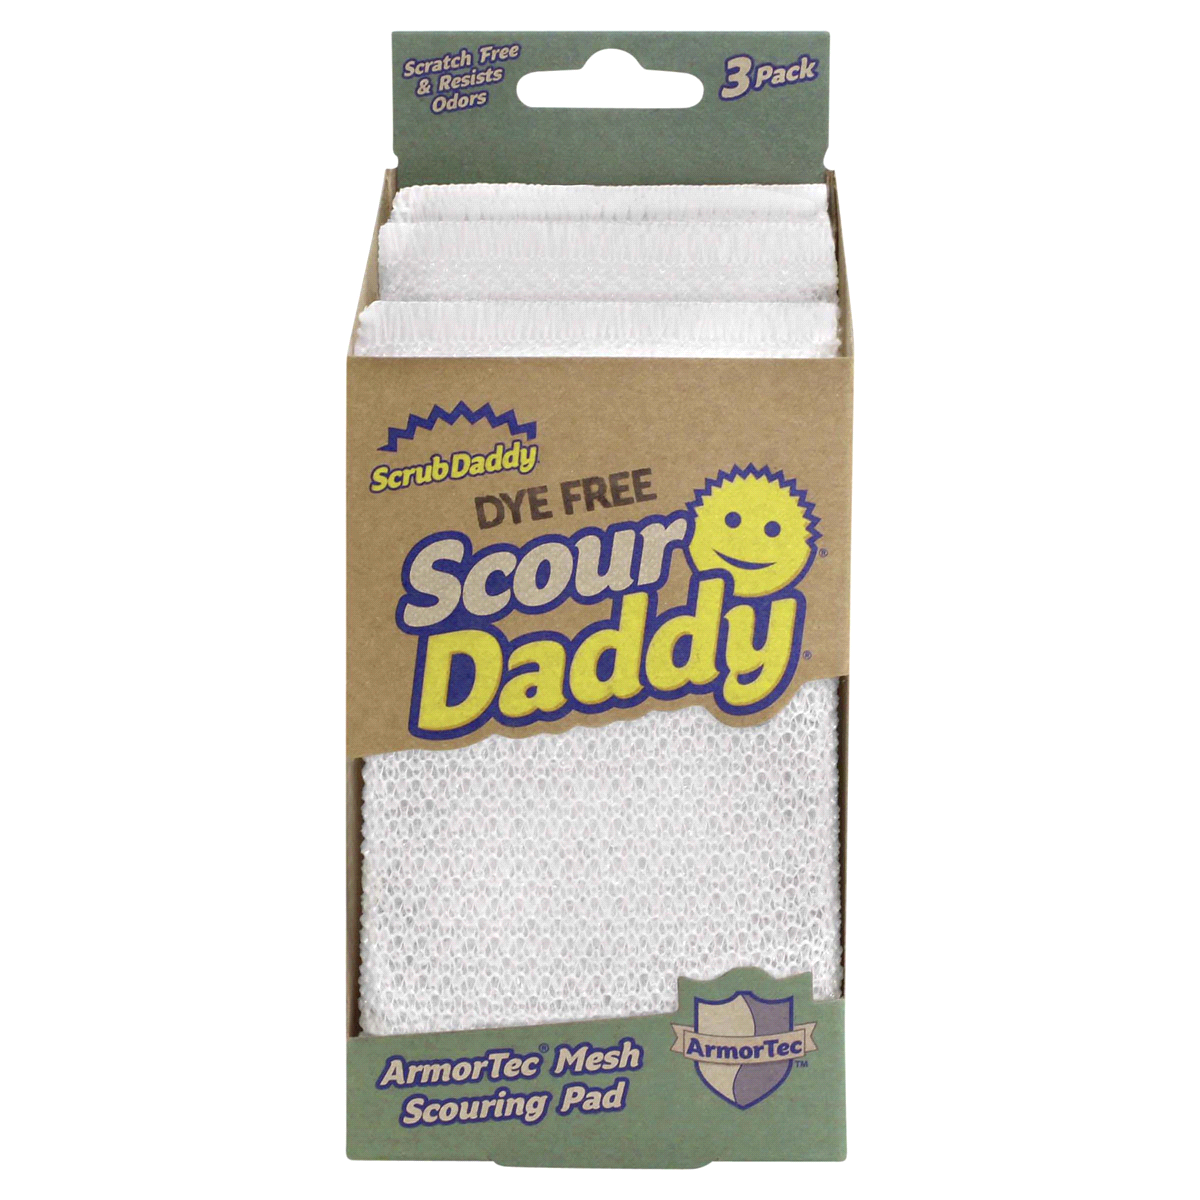 Scrub Daddy Dye Free Scour Daddy Mesh Scouring Pad, 3 pk - Kroger